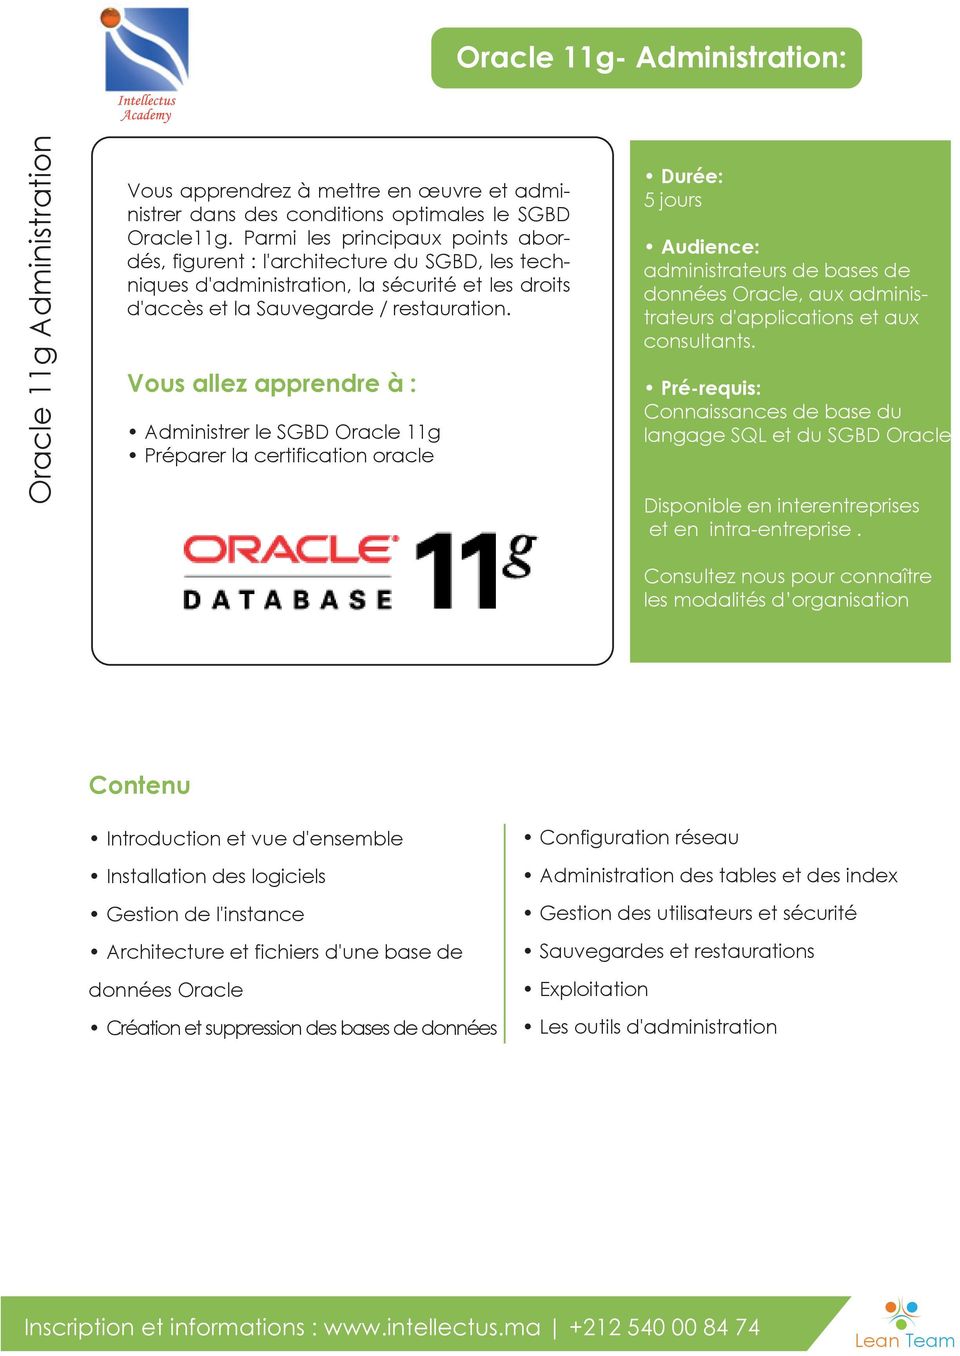 Administrer le SGBD Oracle 11g Préparer la certification oracle 5 jours administrateurs de bases de données Oracle, aux administrateurs d'applications et aux consultants.